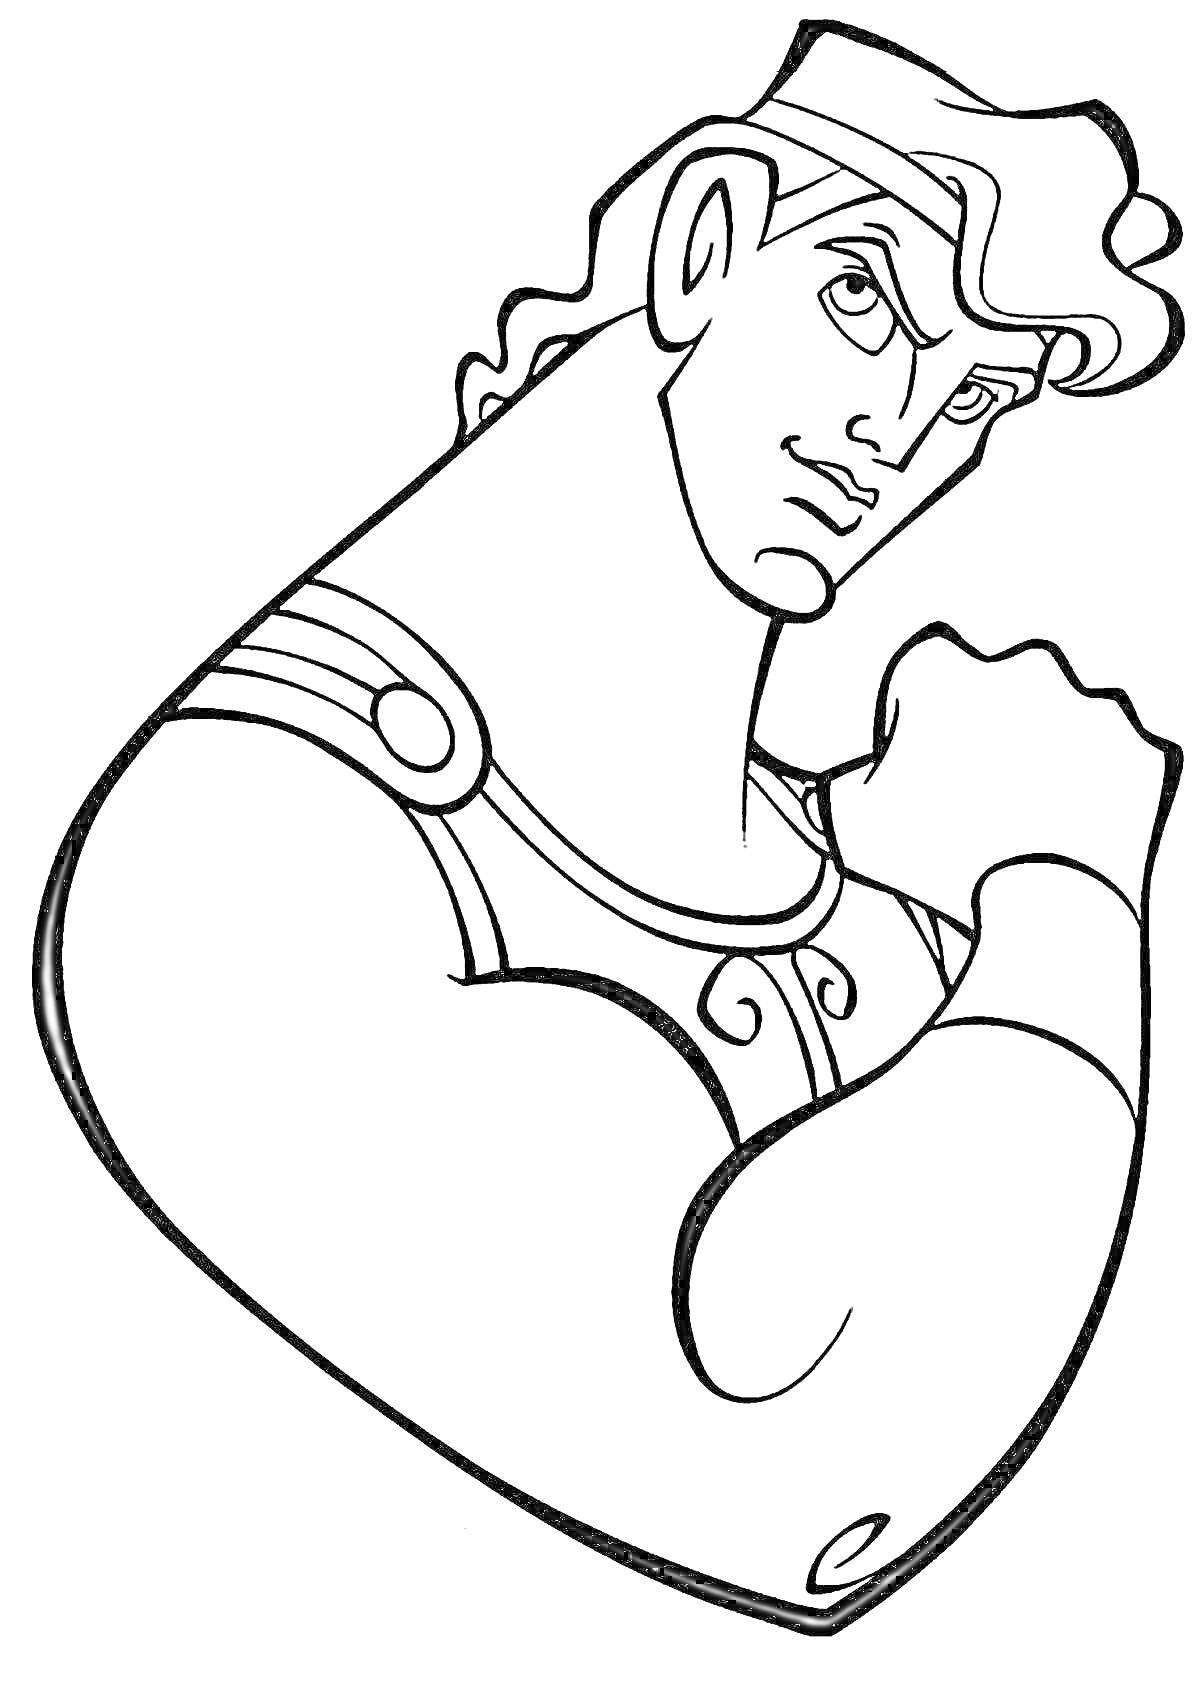 Геракл в стойке с поднятым кулаком, детализация одежды